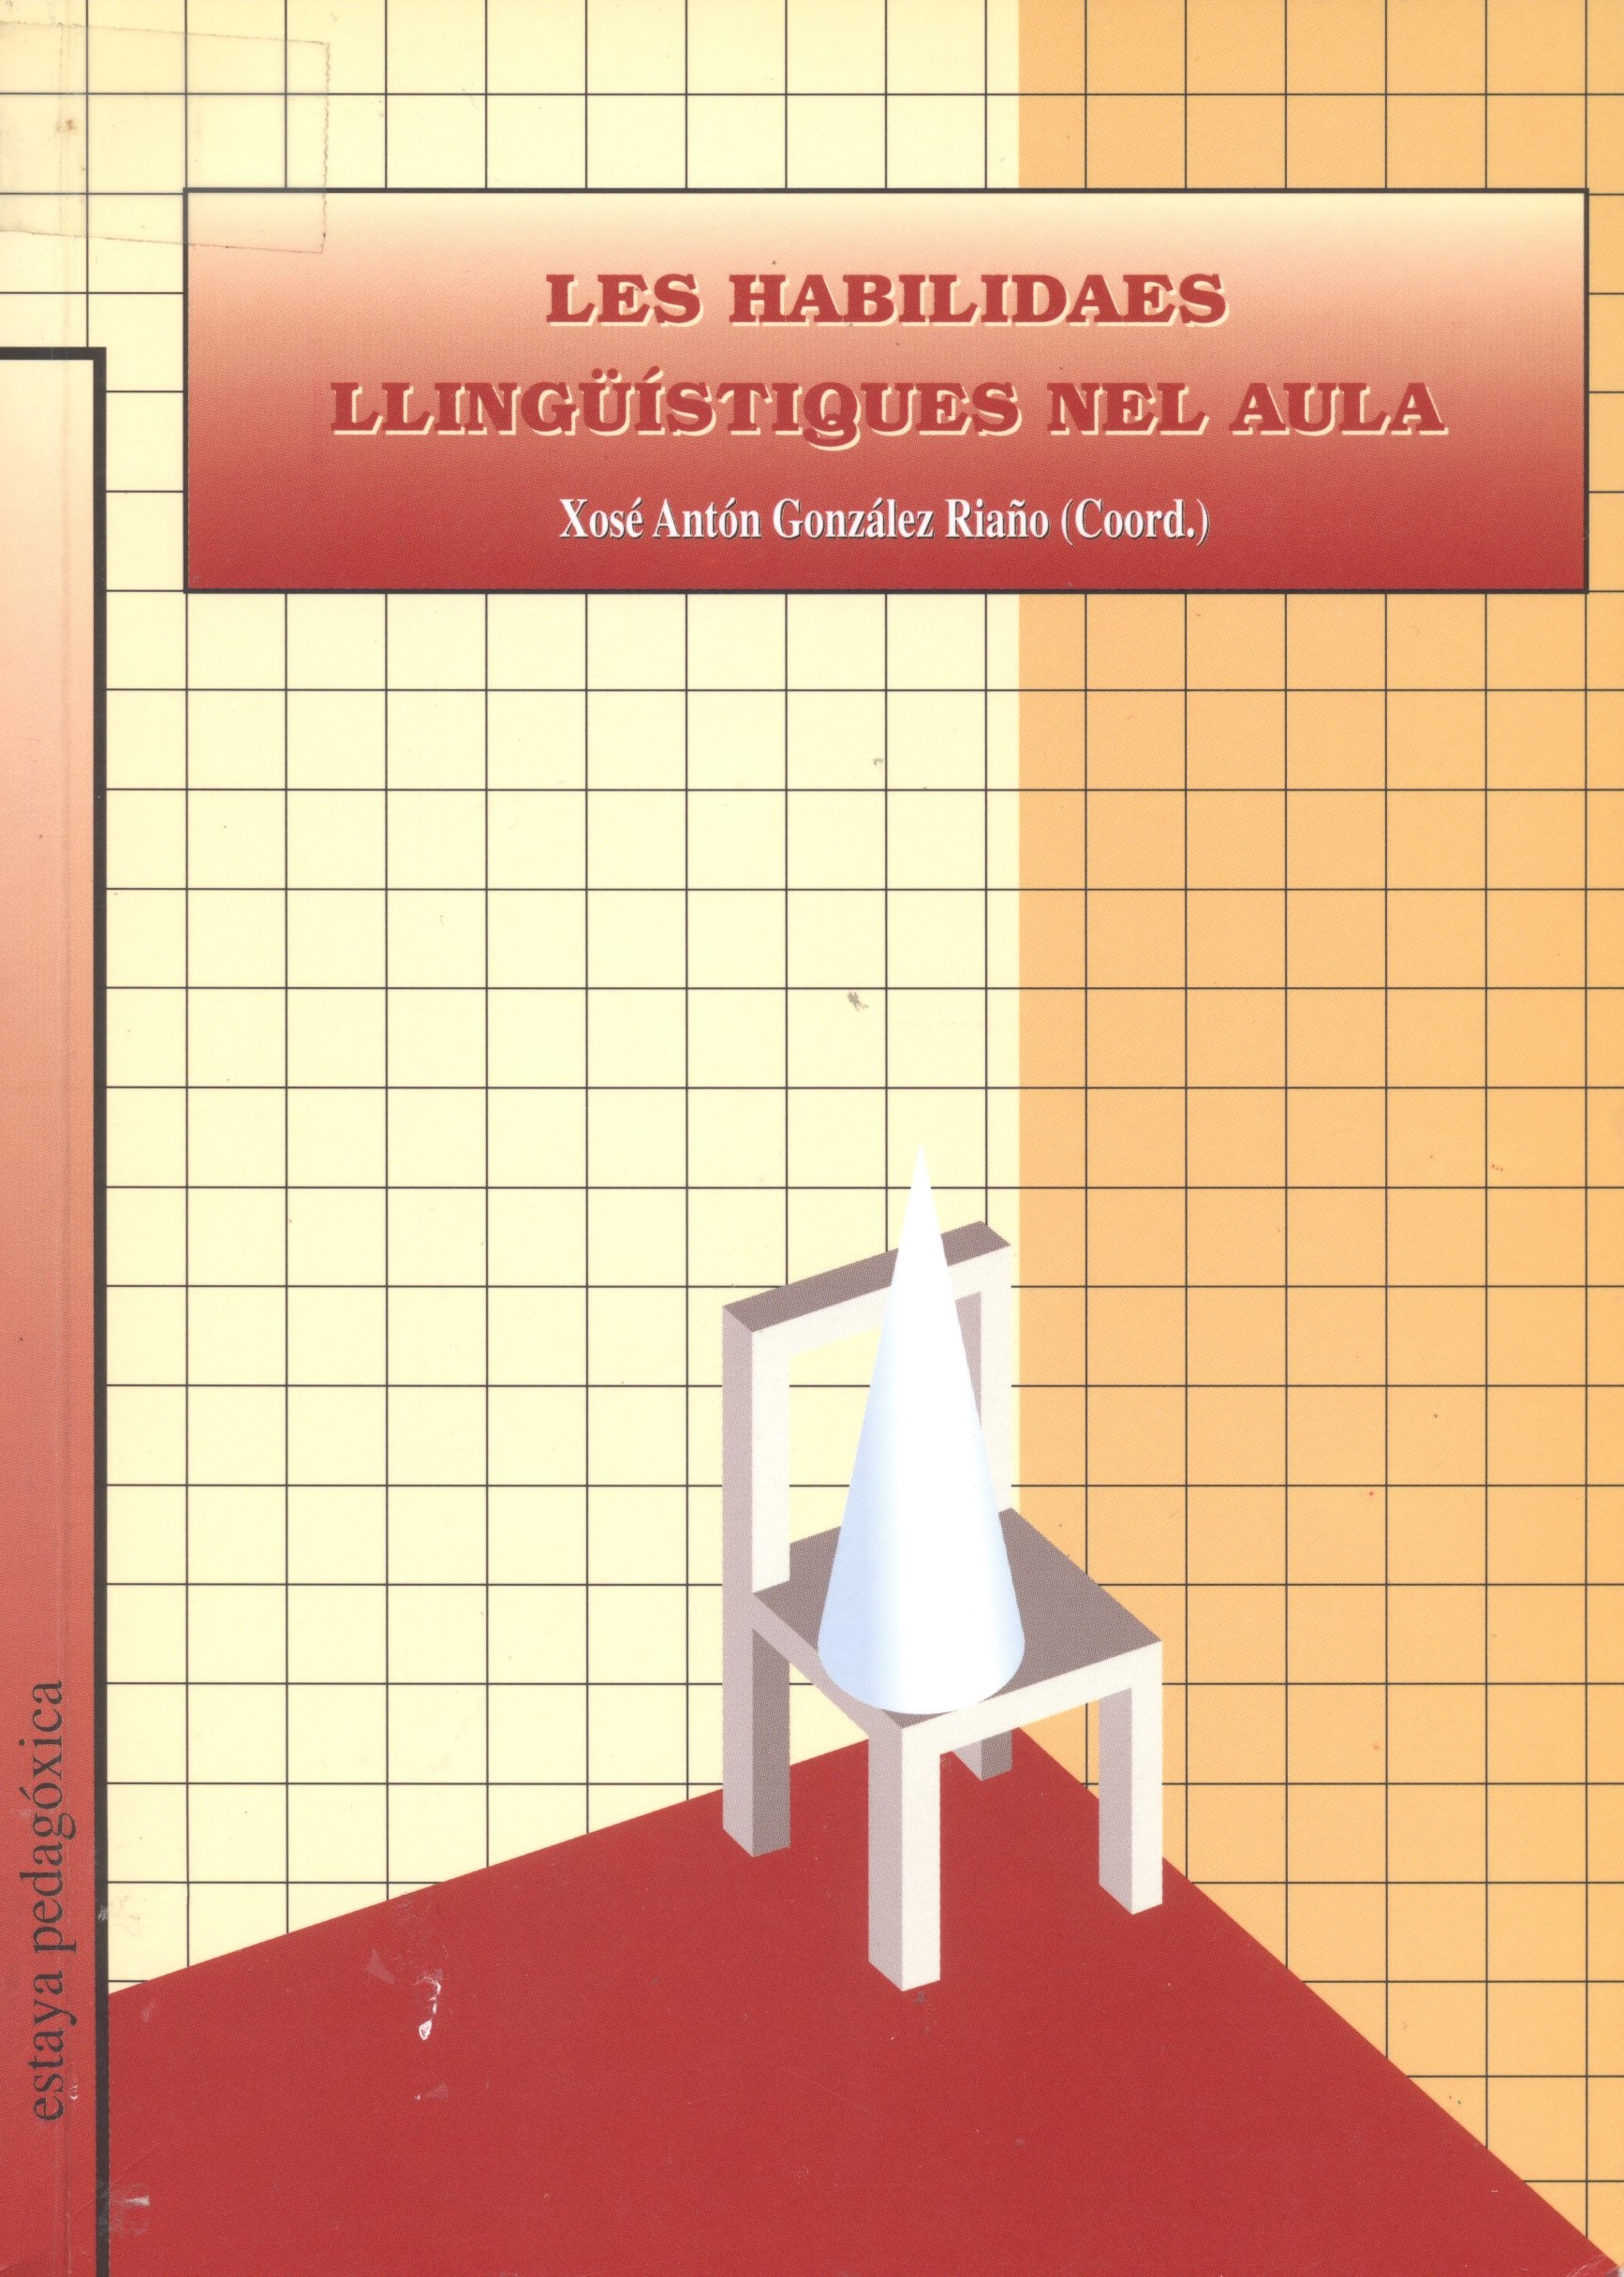 Imagen de portada del libro Les habilidades llingüístiques nel aula